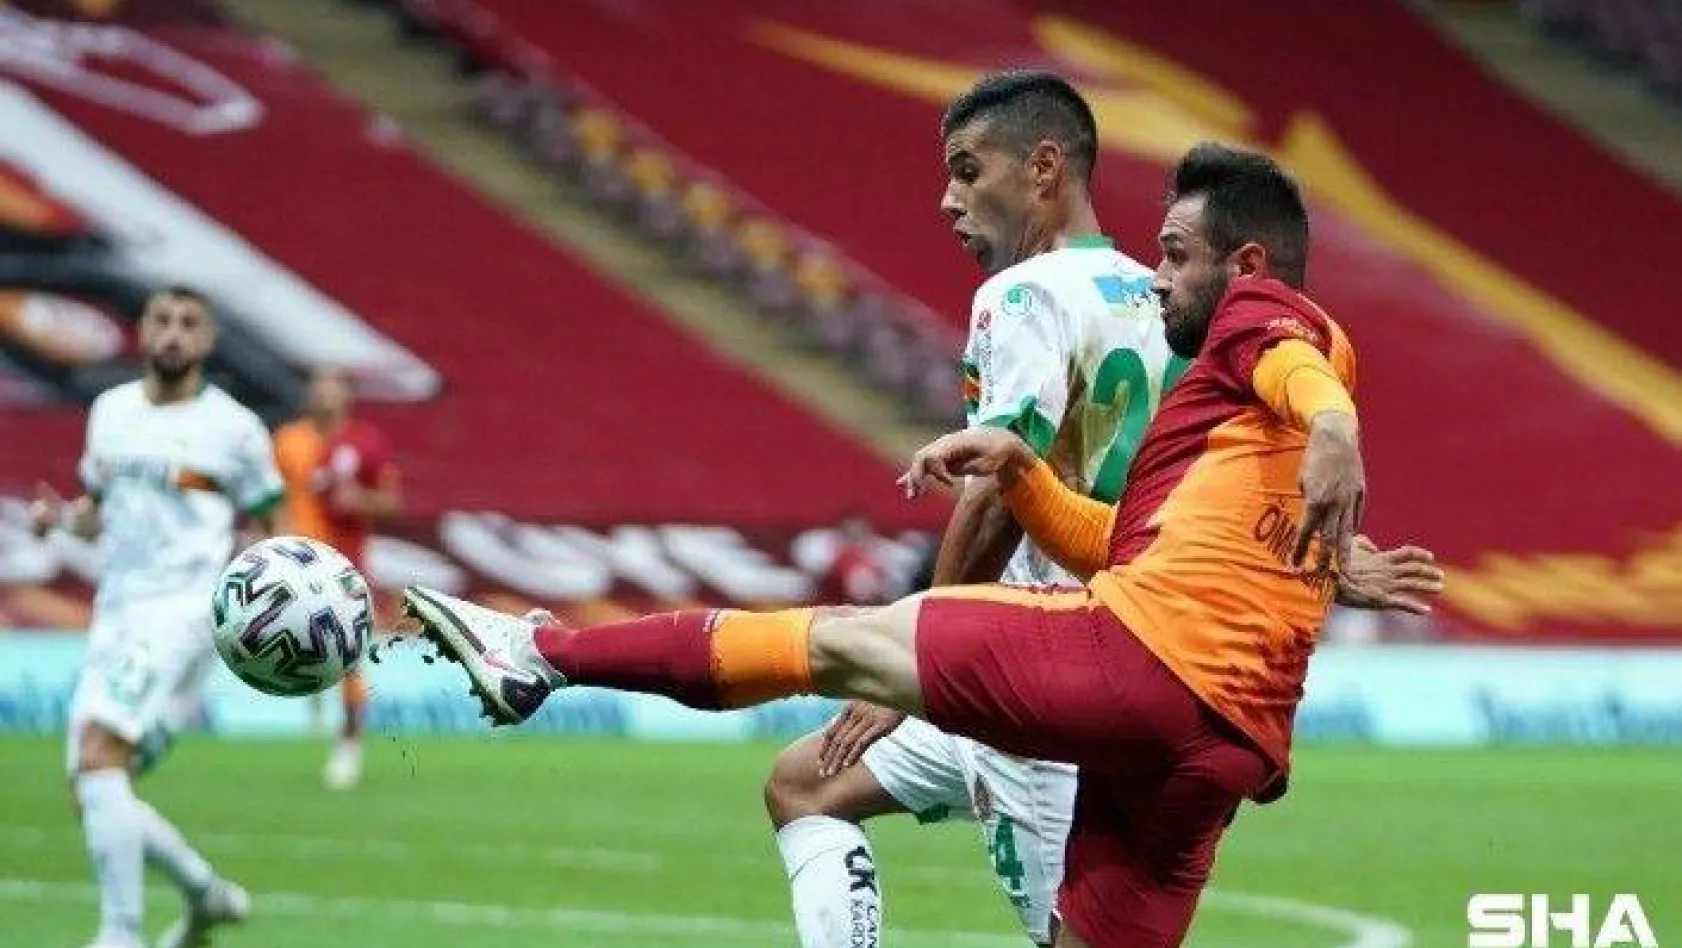 Süper Lig: Galatasaray: 1 - Aytemiz Alanyaspor: 2 (Maç sonucu)